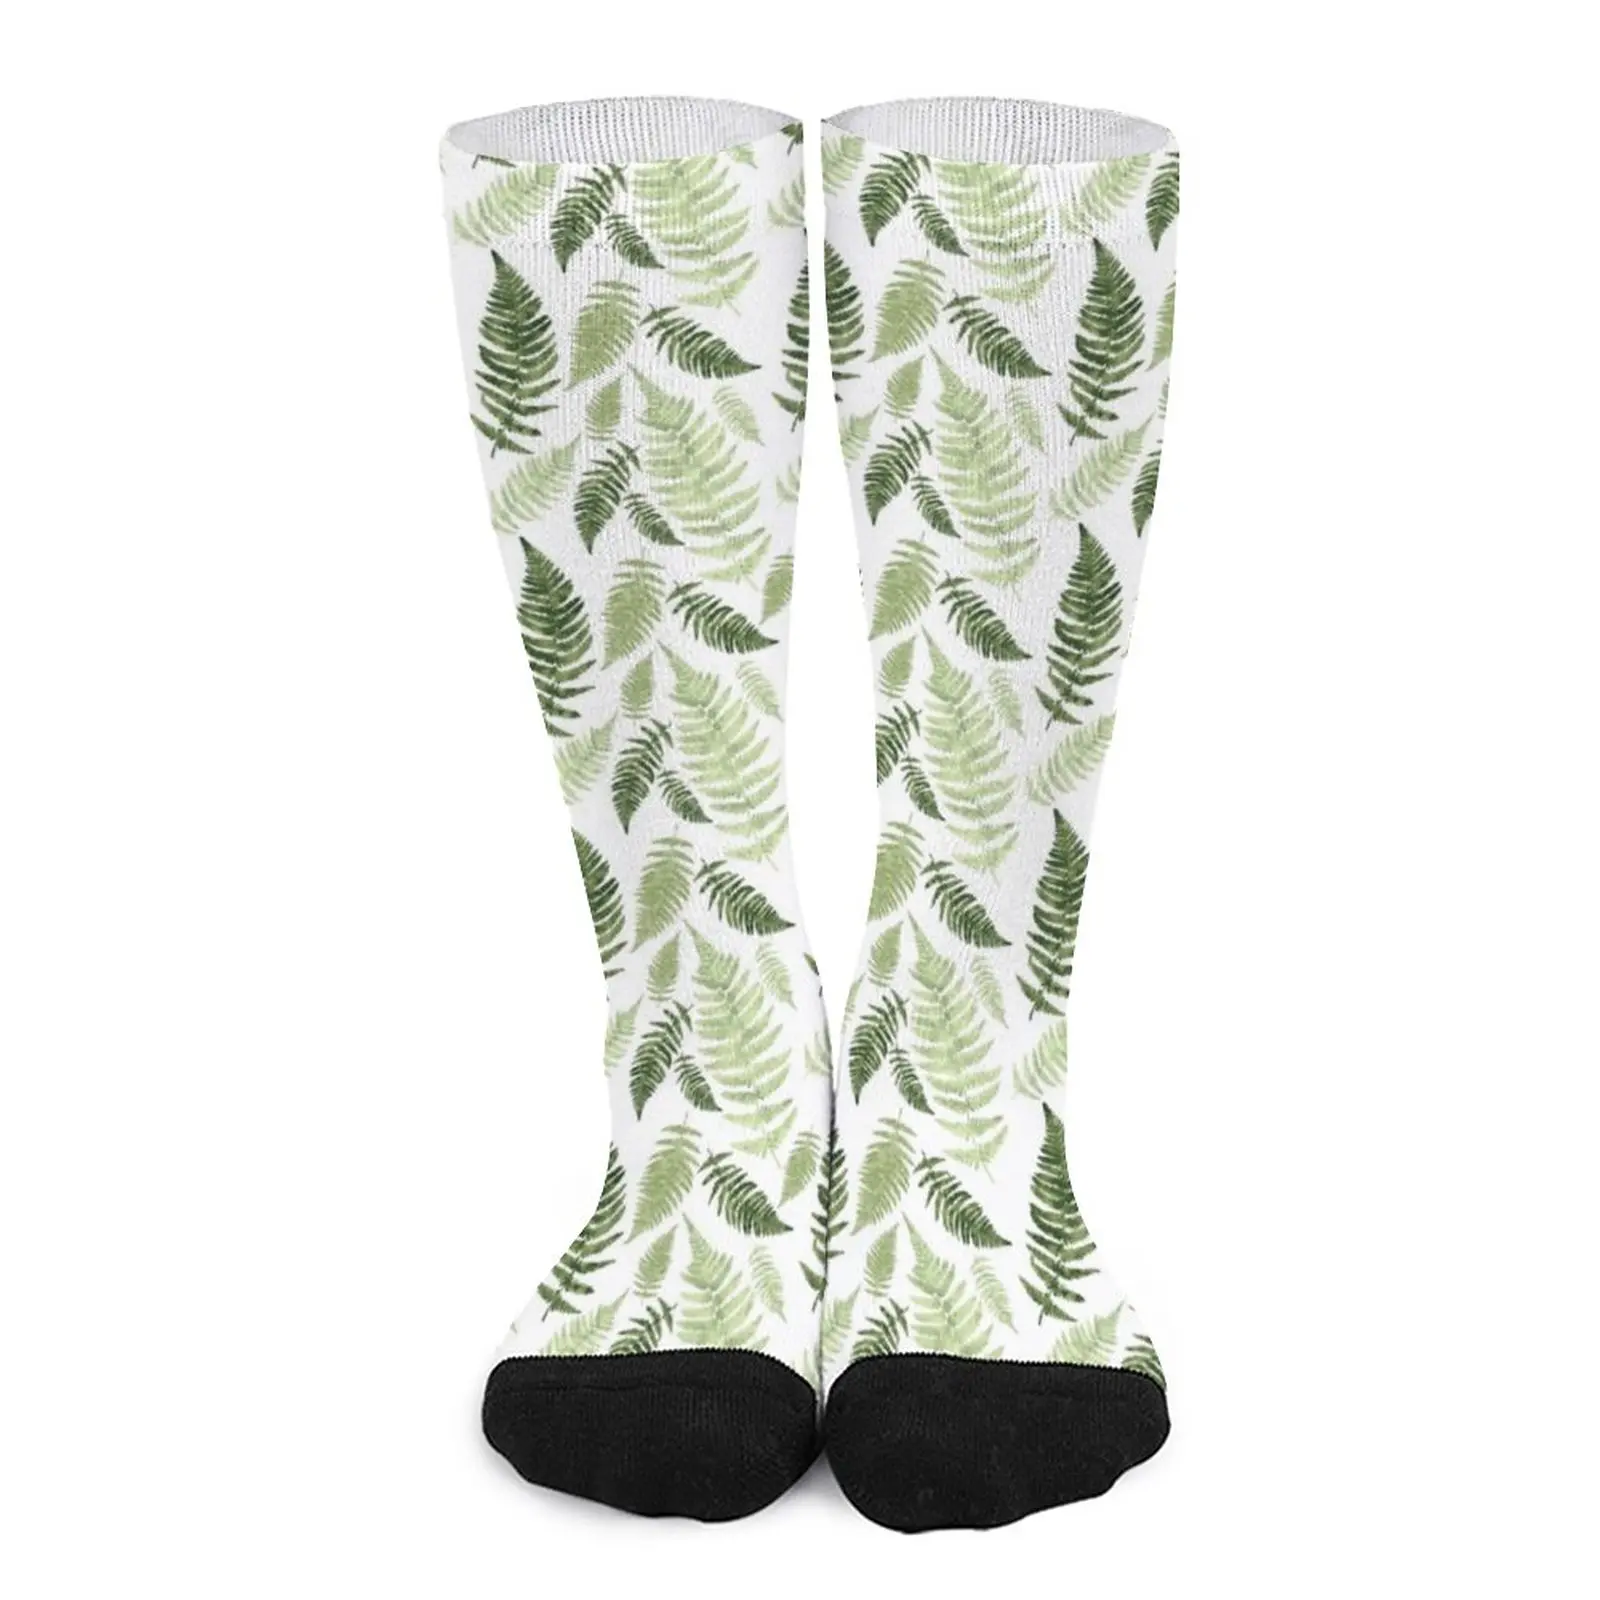 Green Ferns on White Socks basketball socks new in Men's socks Womens socks hockey